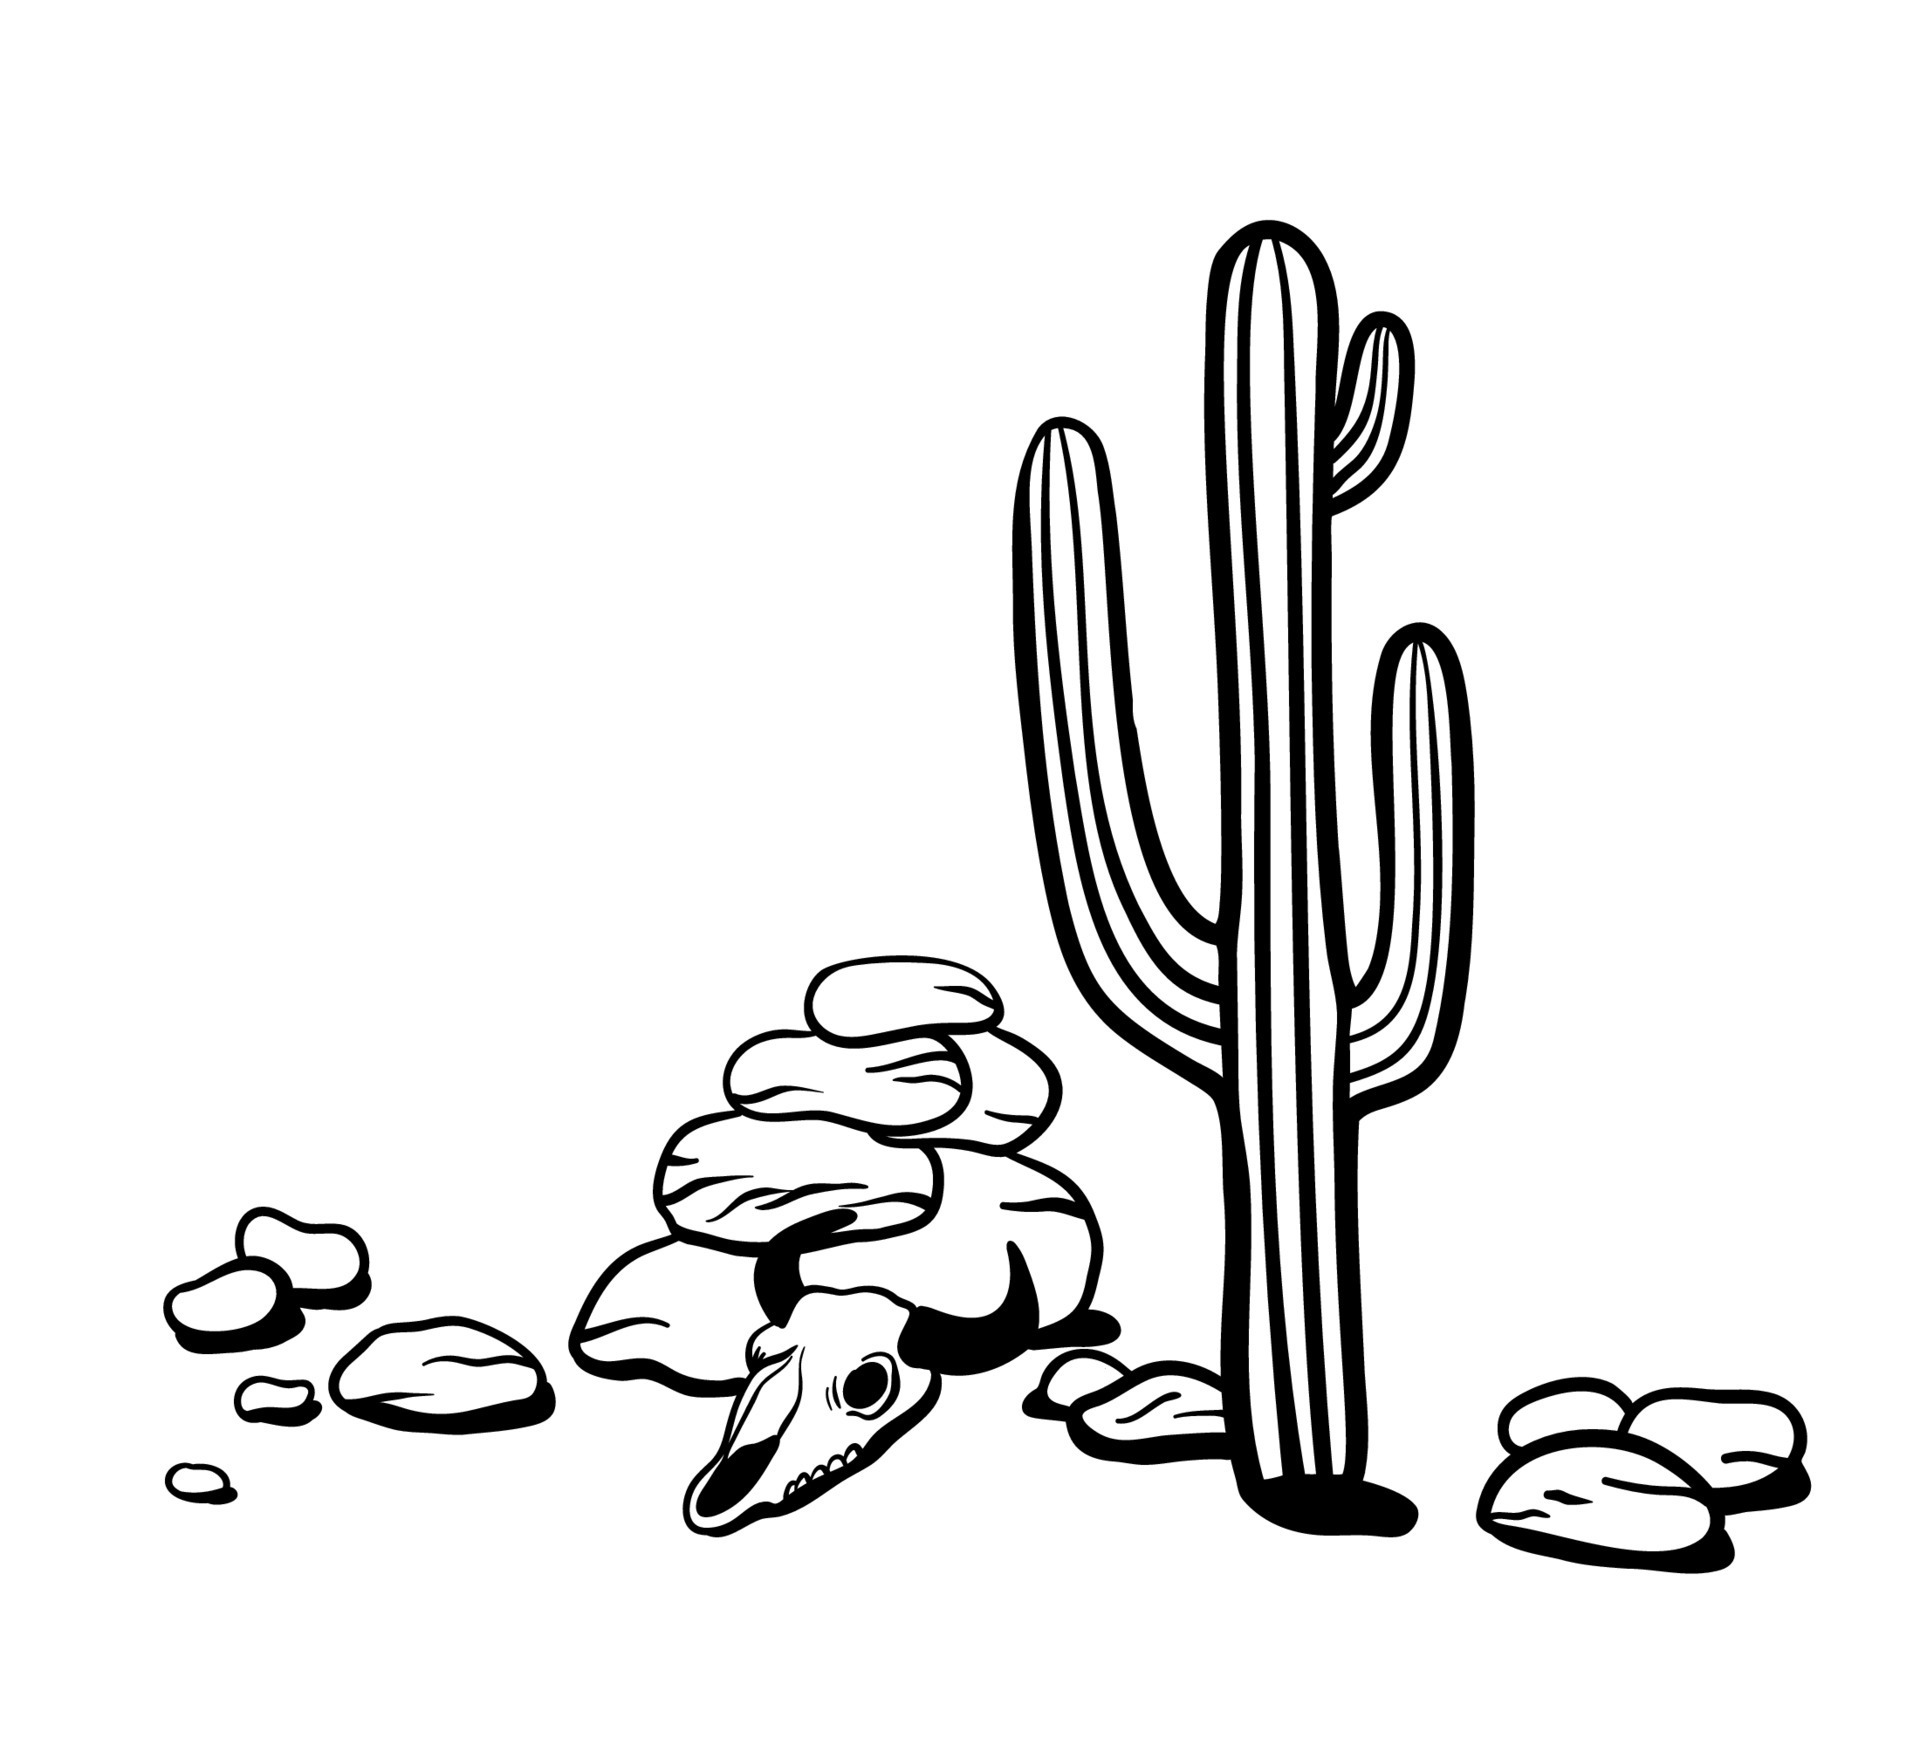 contorno da paisagem do deserto. ilustração em vetor preto e branco. cactos  mexicanos, rochas e crânio de animais 13135262 Vetor no Vecteezy